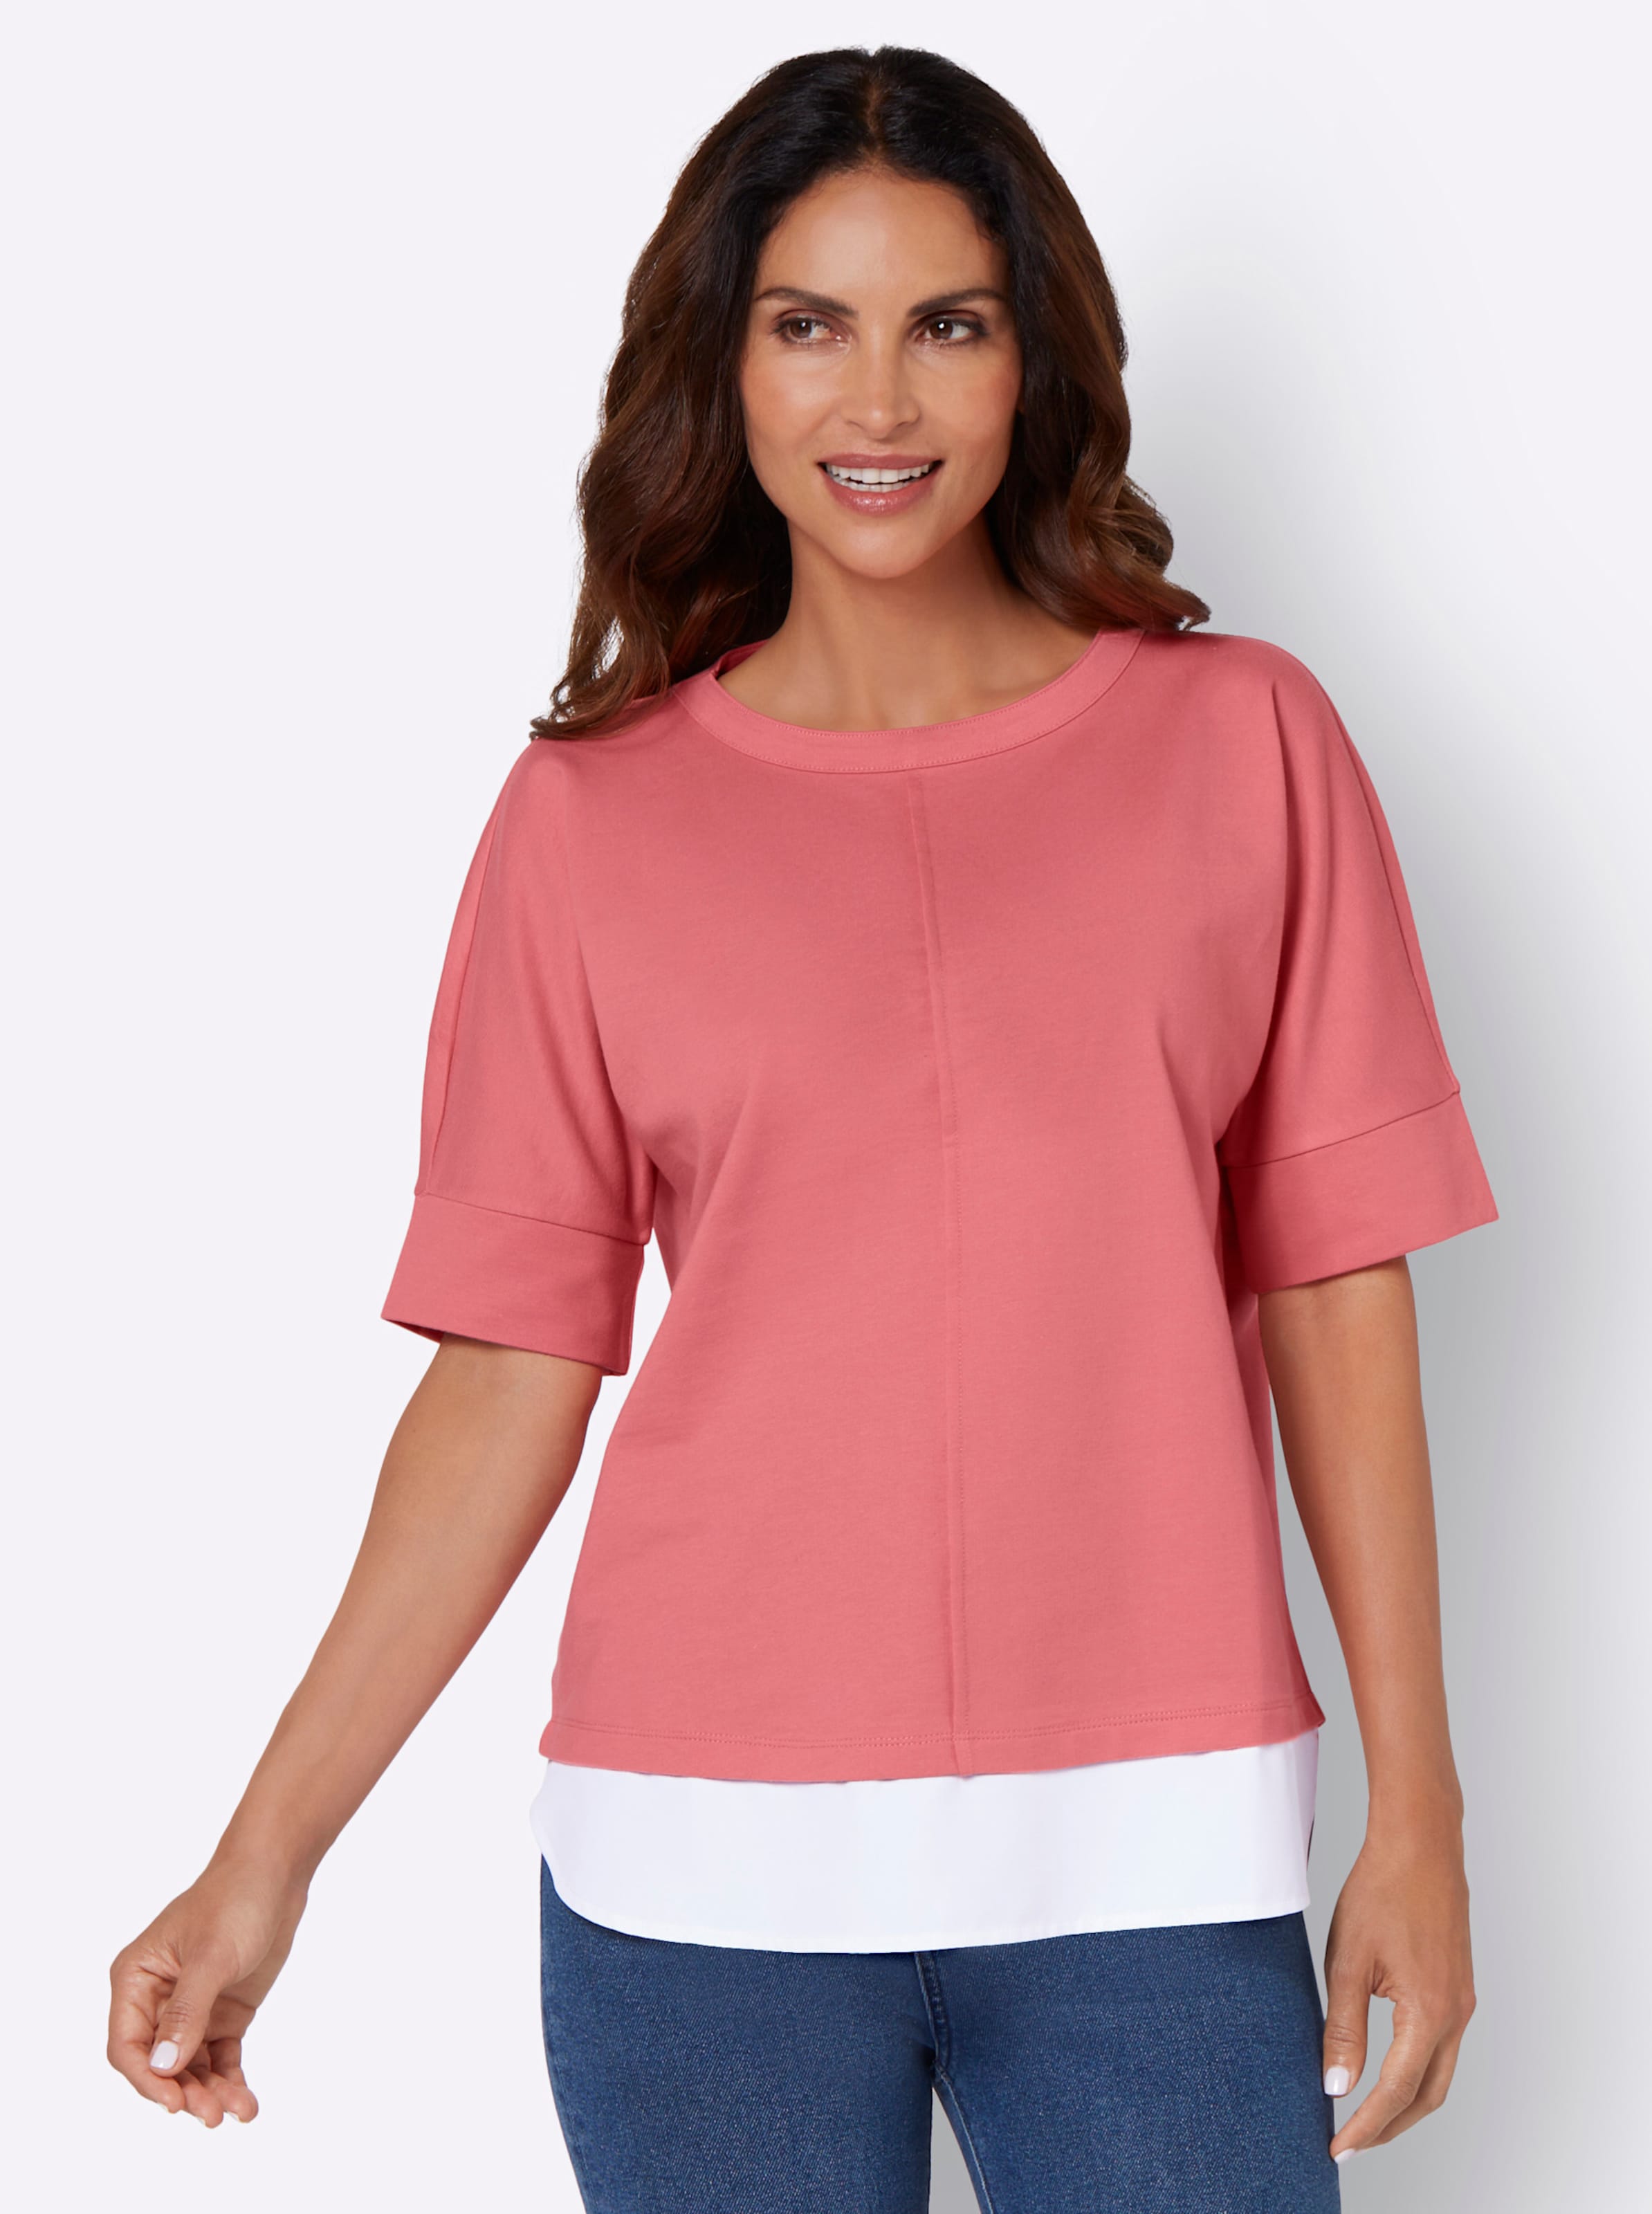 Witt Damen 2-in-1-Shirt, flamingo-ecru